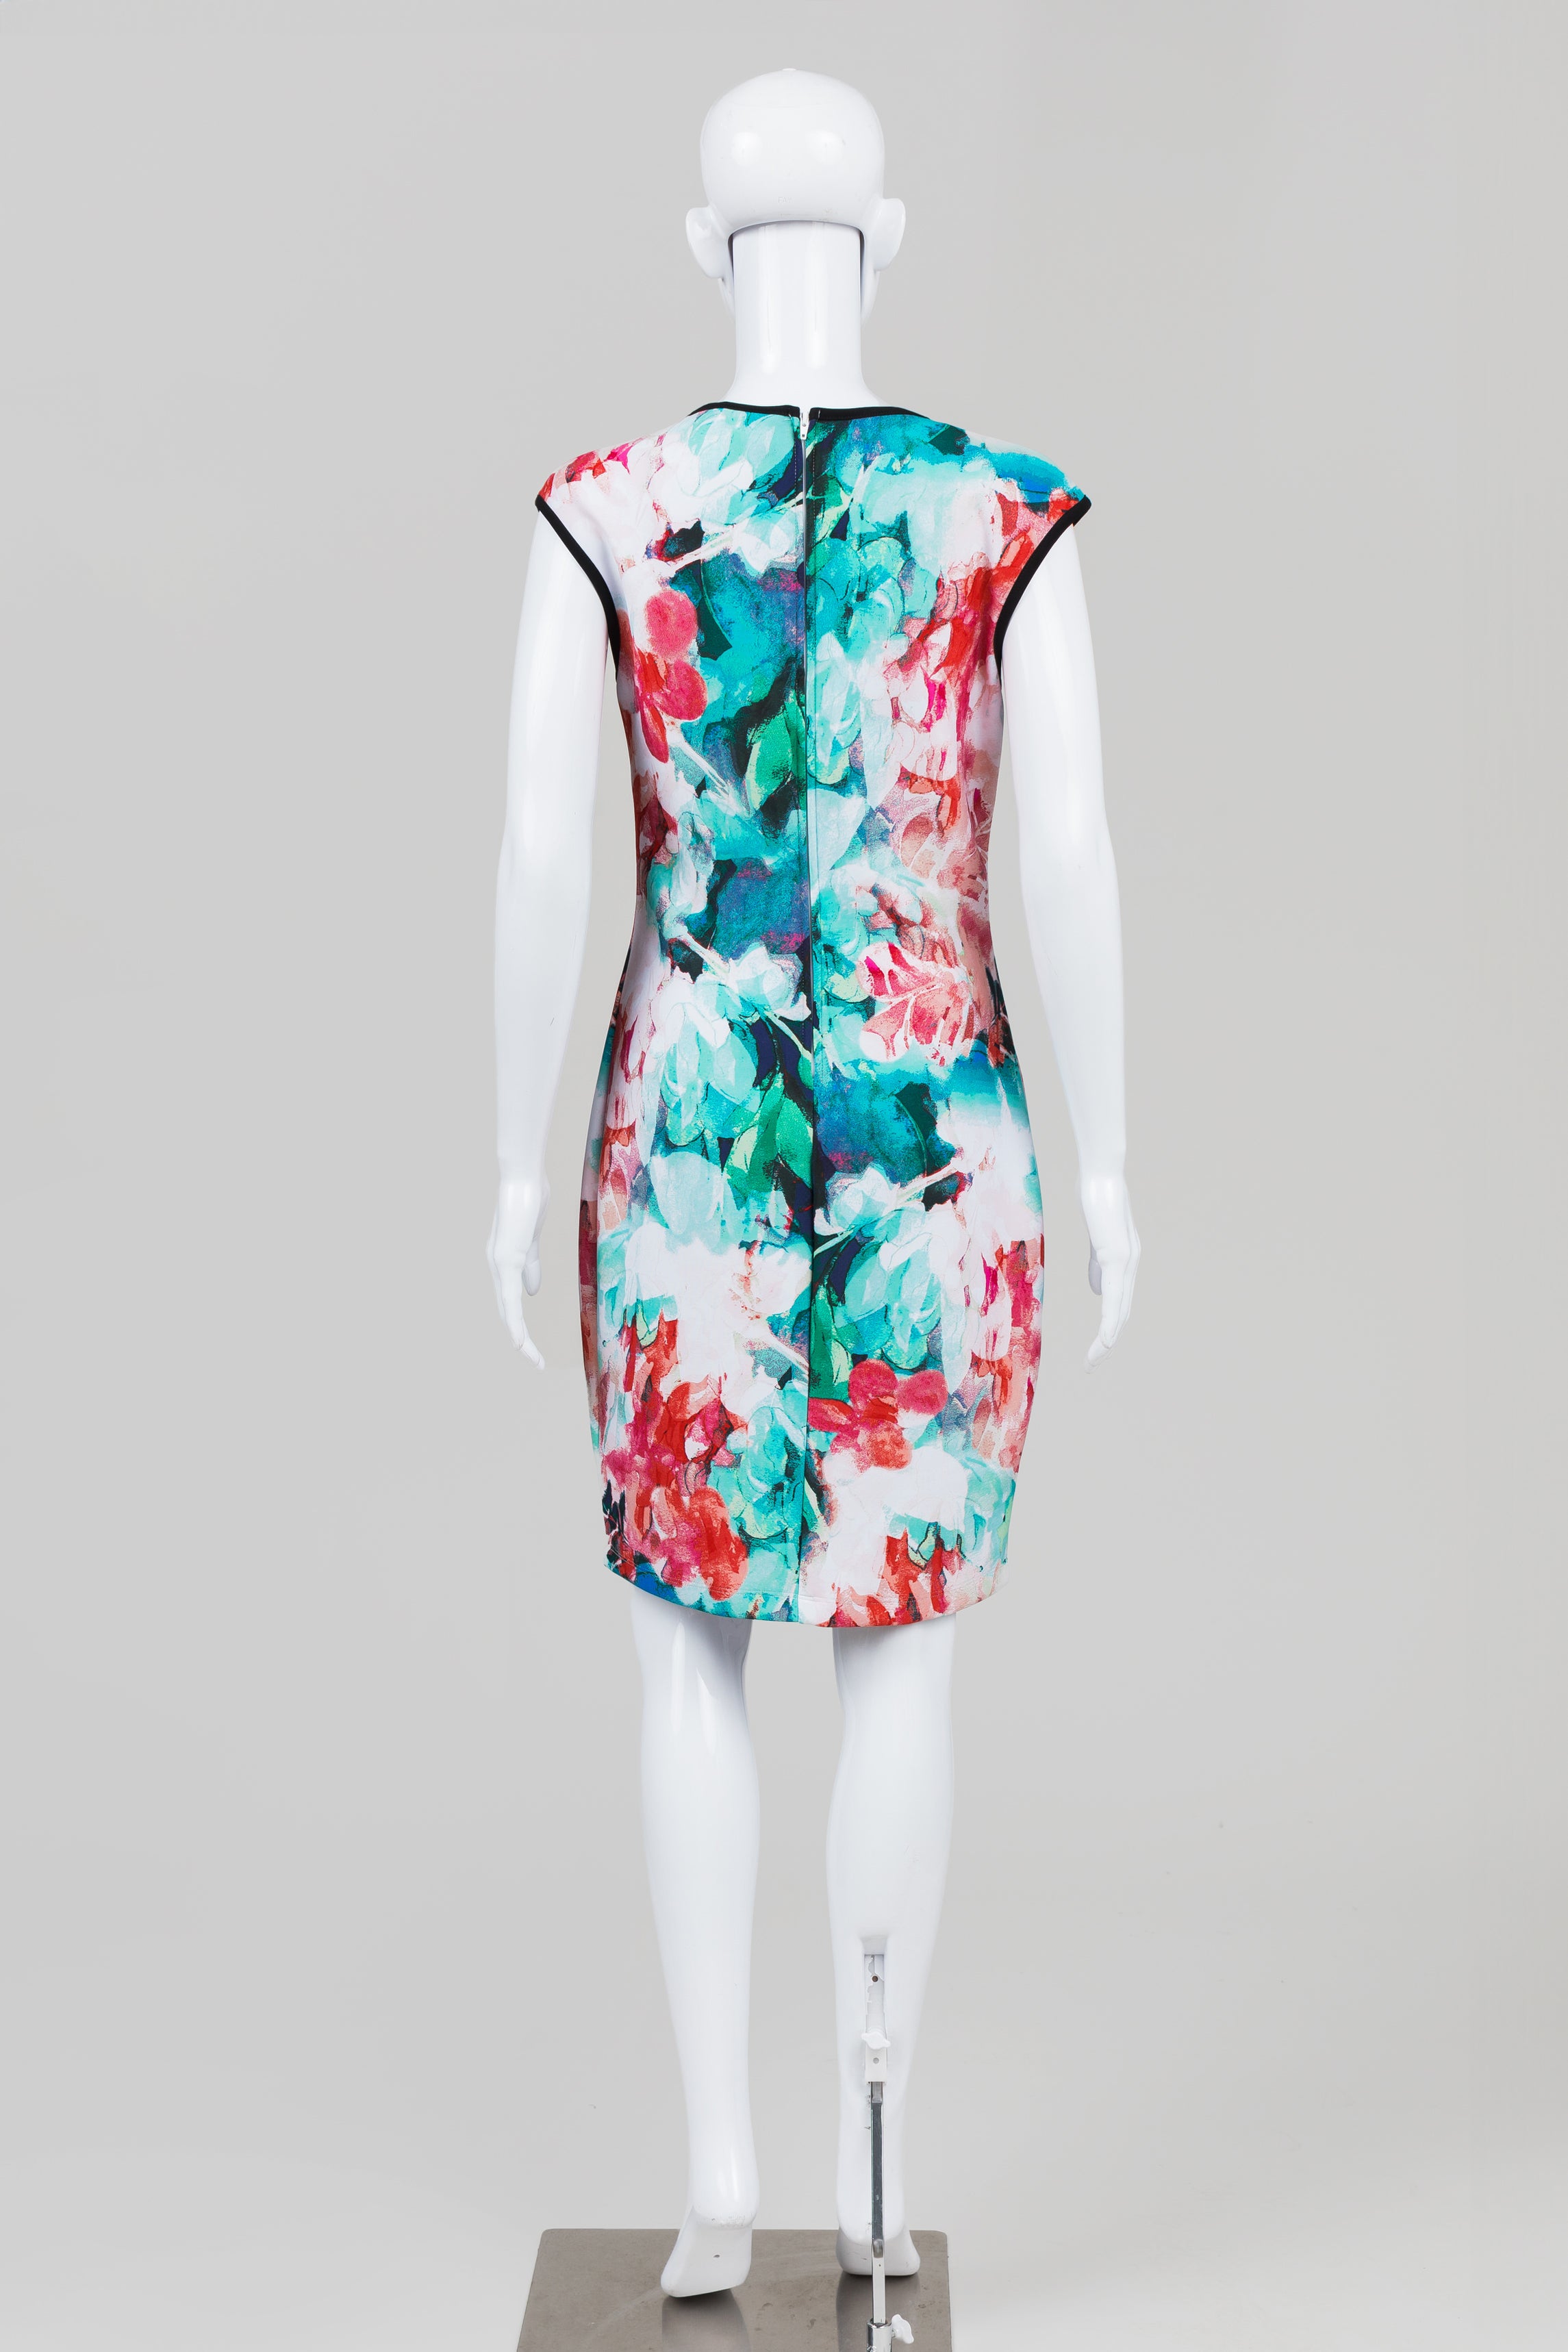 Bisou Bisou Teal/Navy/Coral Floral Print Sheath Dress (10)